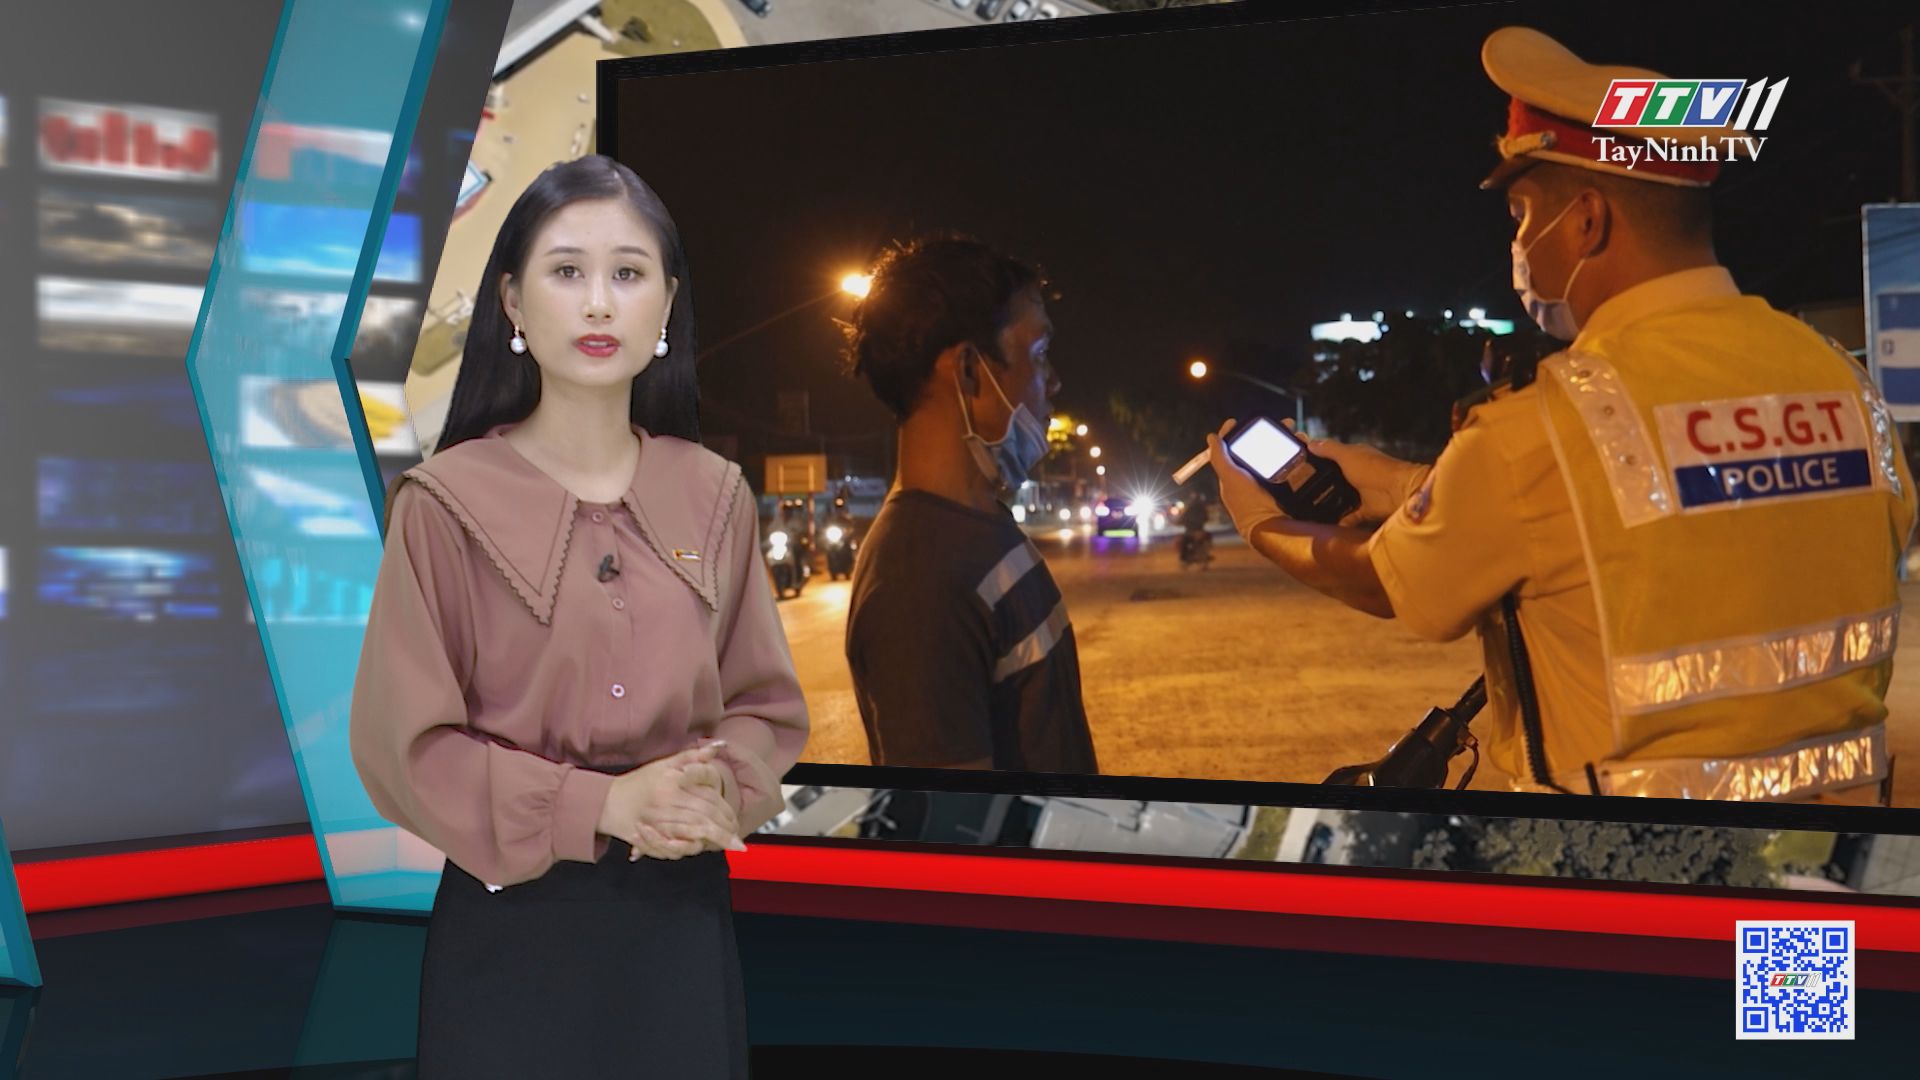 TayNinhTV | VĂN HÓA GIAO THÔNG | Công an Tây Ninh tăng cường kiểm tra nồng độ cồn